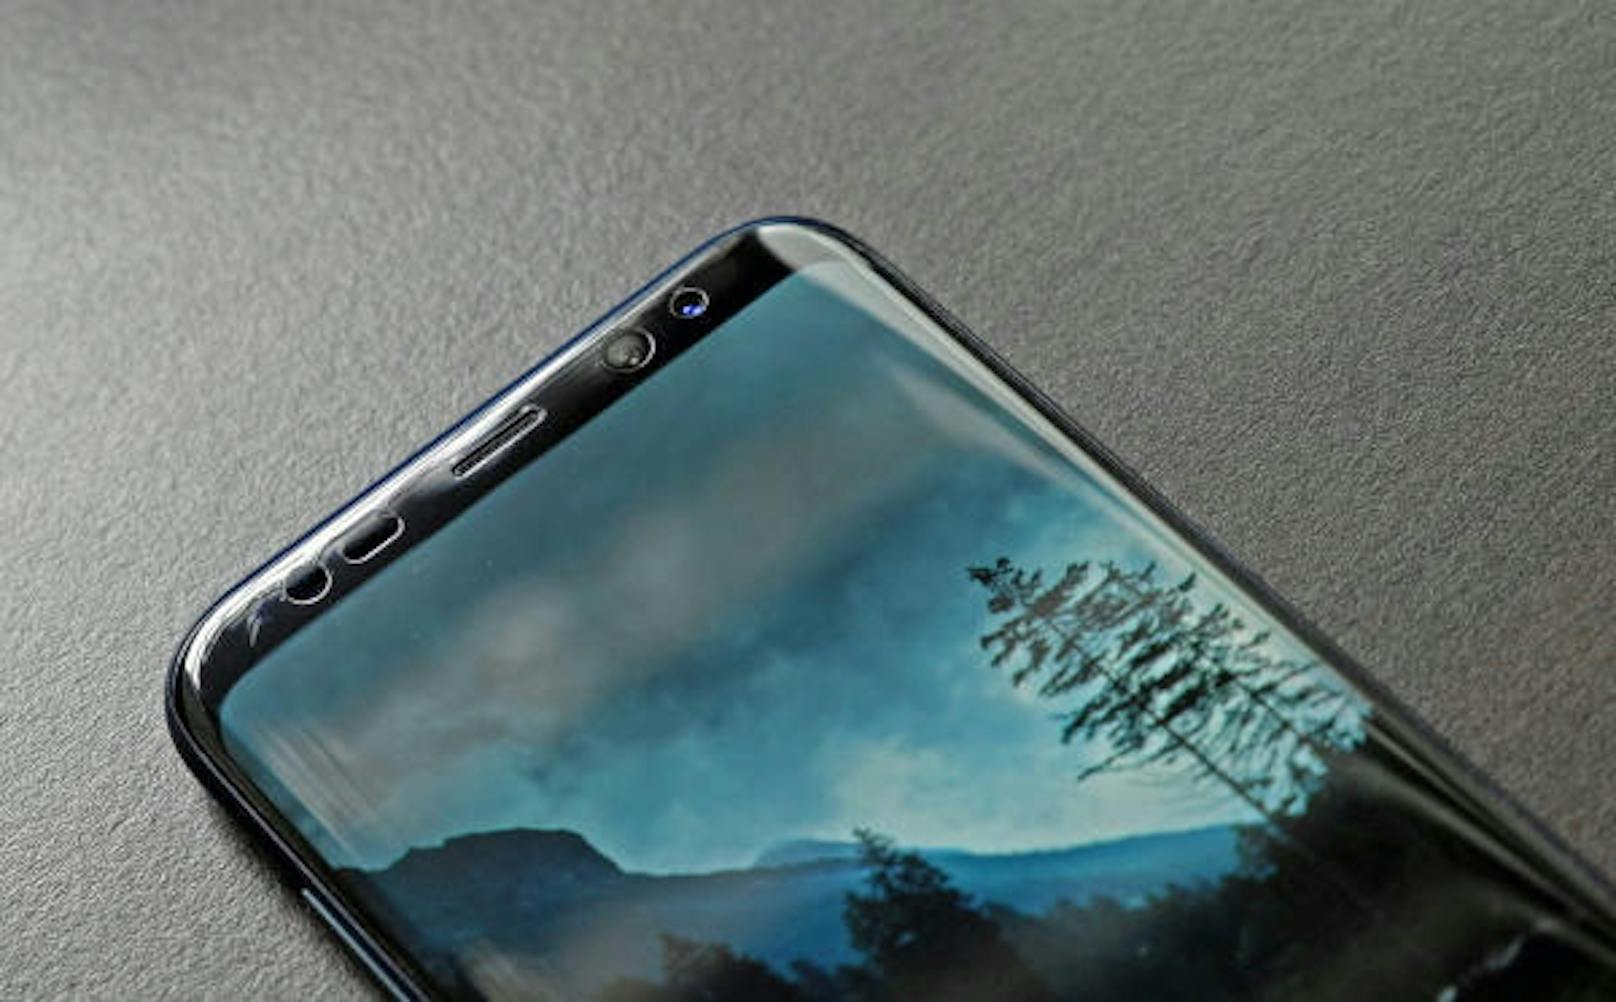 Das Samsung Galaxy S8 konnte die Fans auch wegen des großartigen Displays überzeugen. Anfang 2018 soll der Nachfolger enthüllt werden. Optisch soll sich das neue Modell nur geringfügig von seinem Vorgänger unterscheiden.